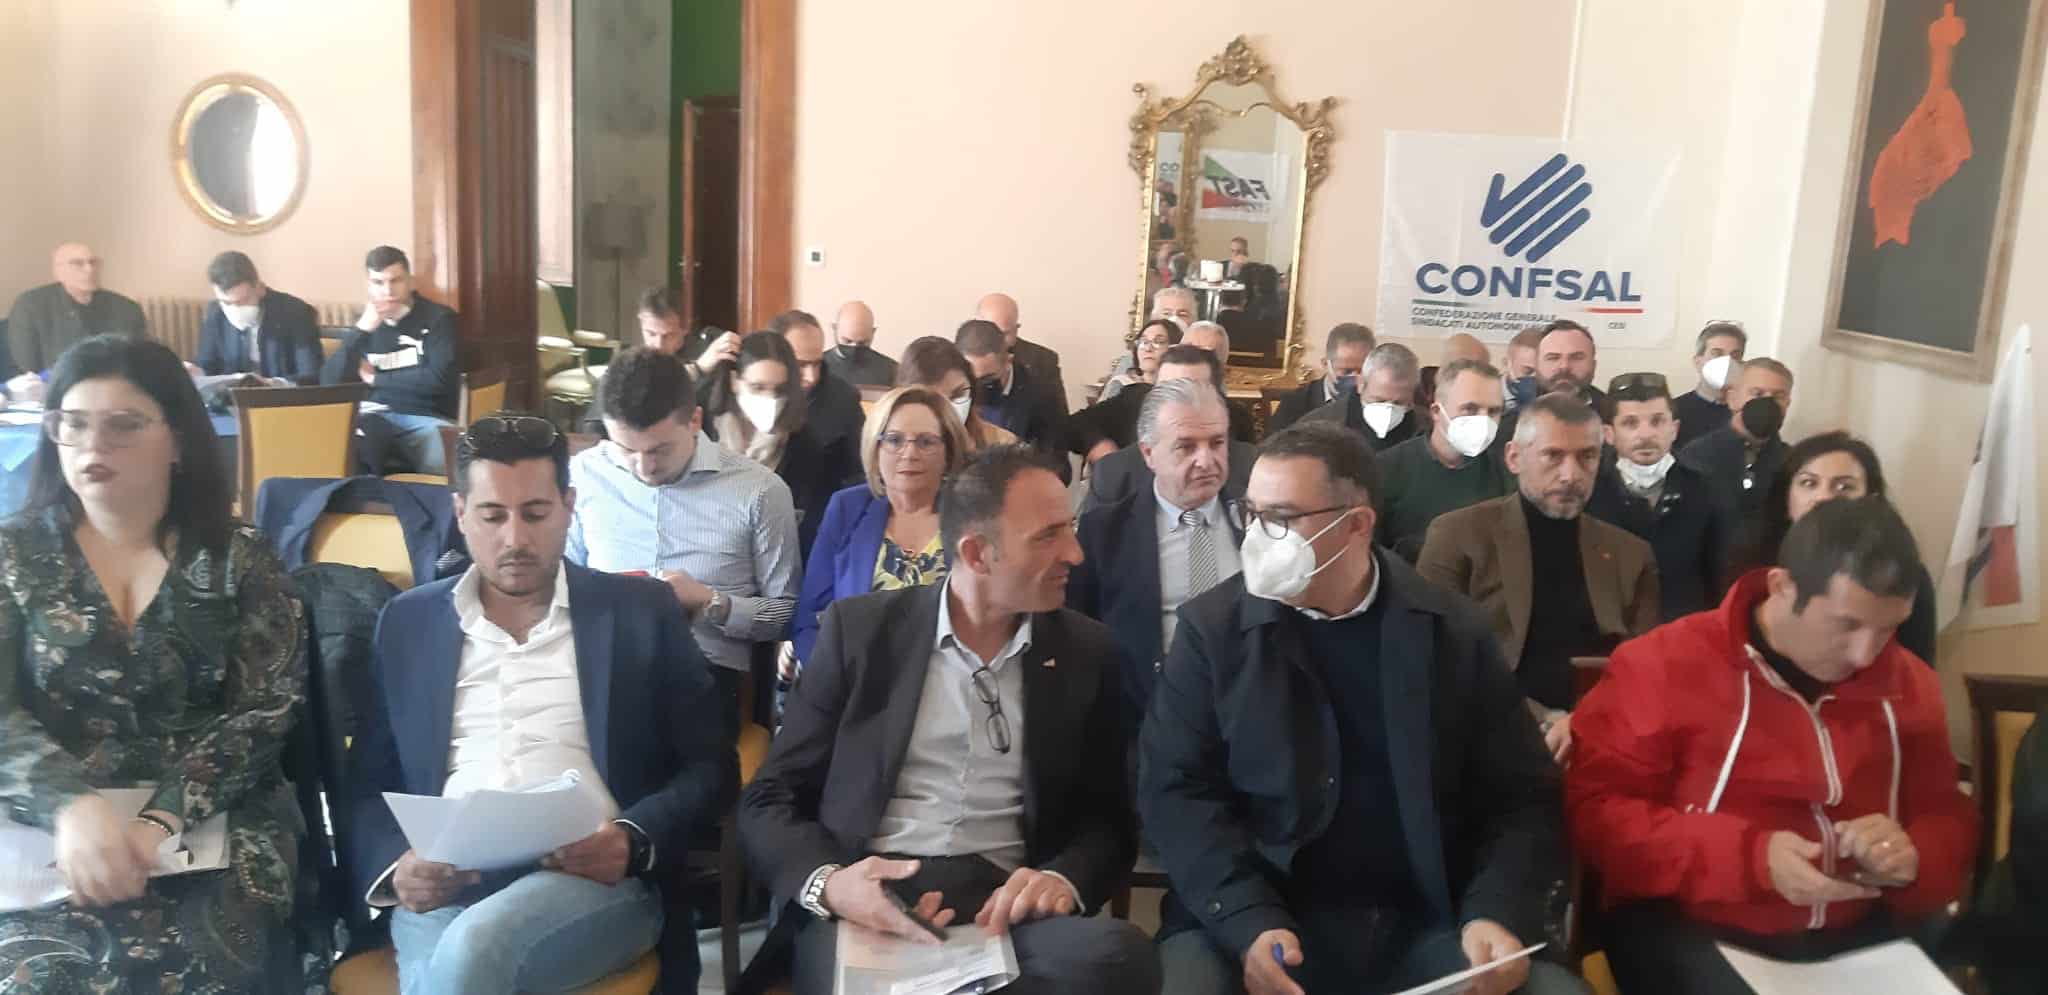 II° Congresso generale SLM Fast Confsal Sicilia, grande partecipazione a villa Manganelli: Genovese eletto segretario